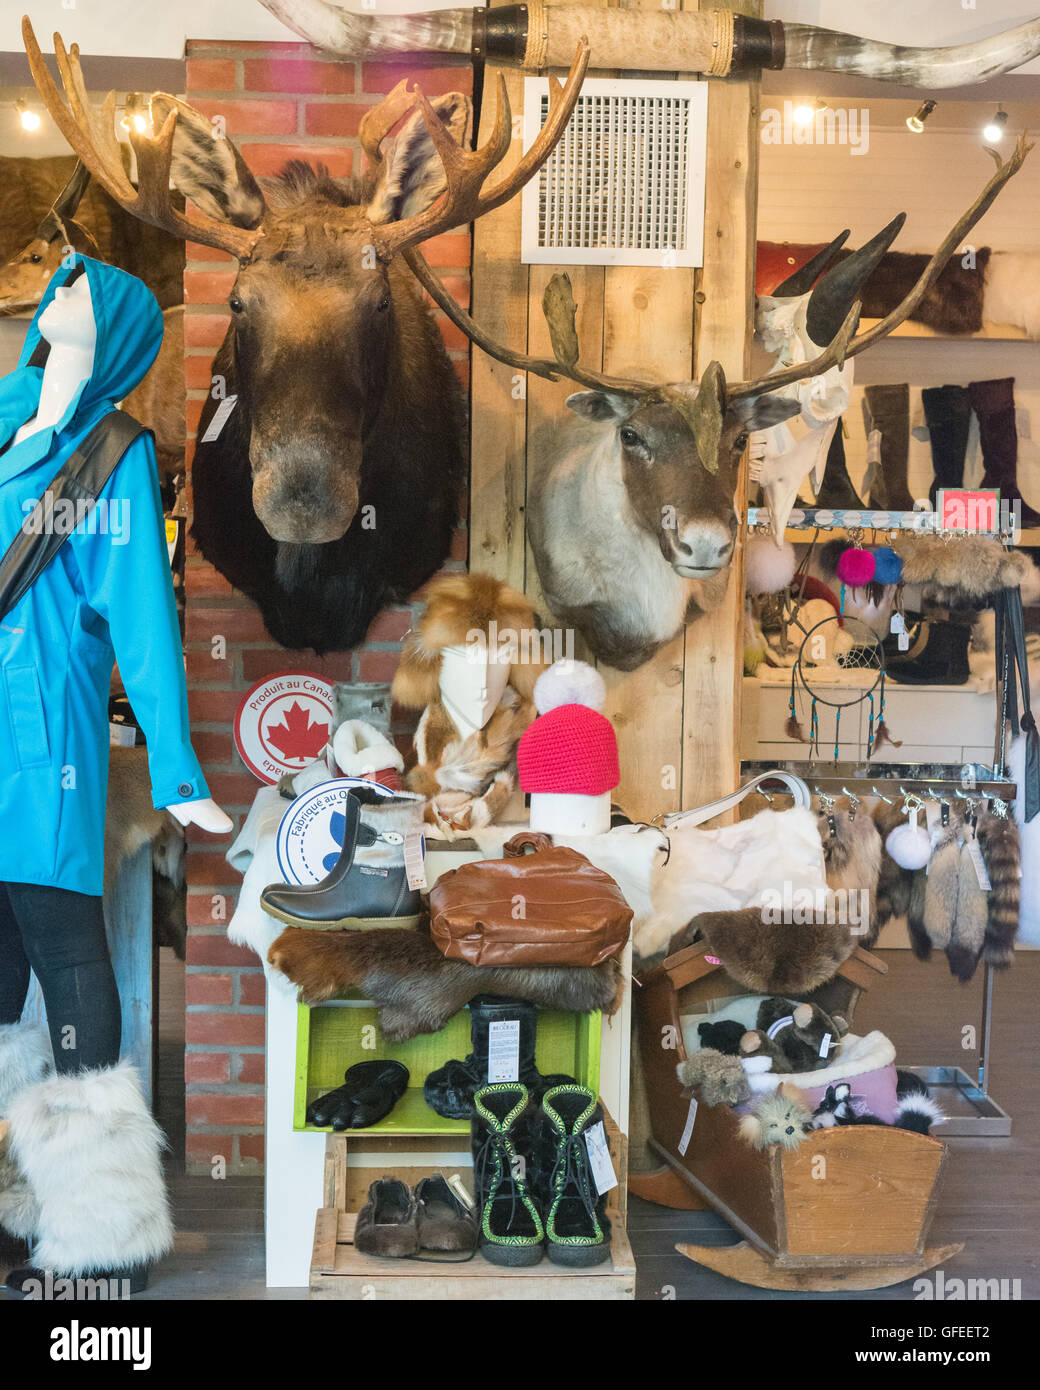 Les produits de la fourrure du Canada - y compris les supports de tête, bottes et accessoires - sur l'affichage dans un magasin (Bilodeau) dans la ville de Québec, Canada Banque D'Images